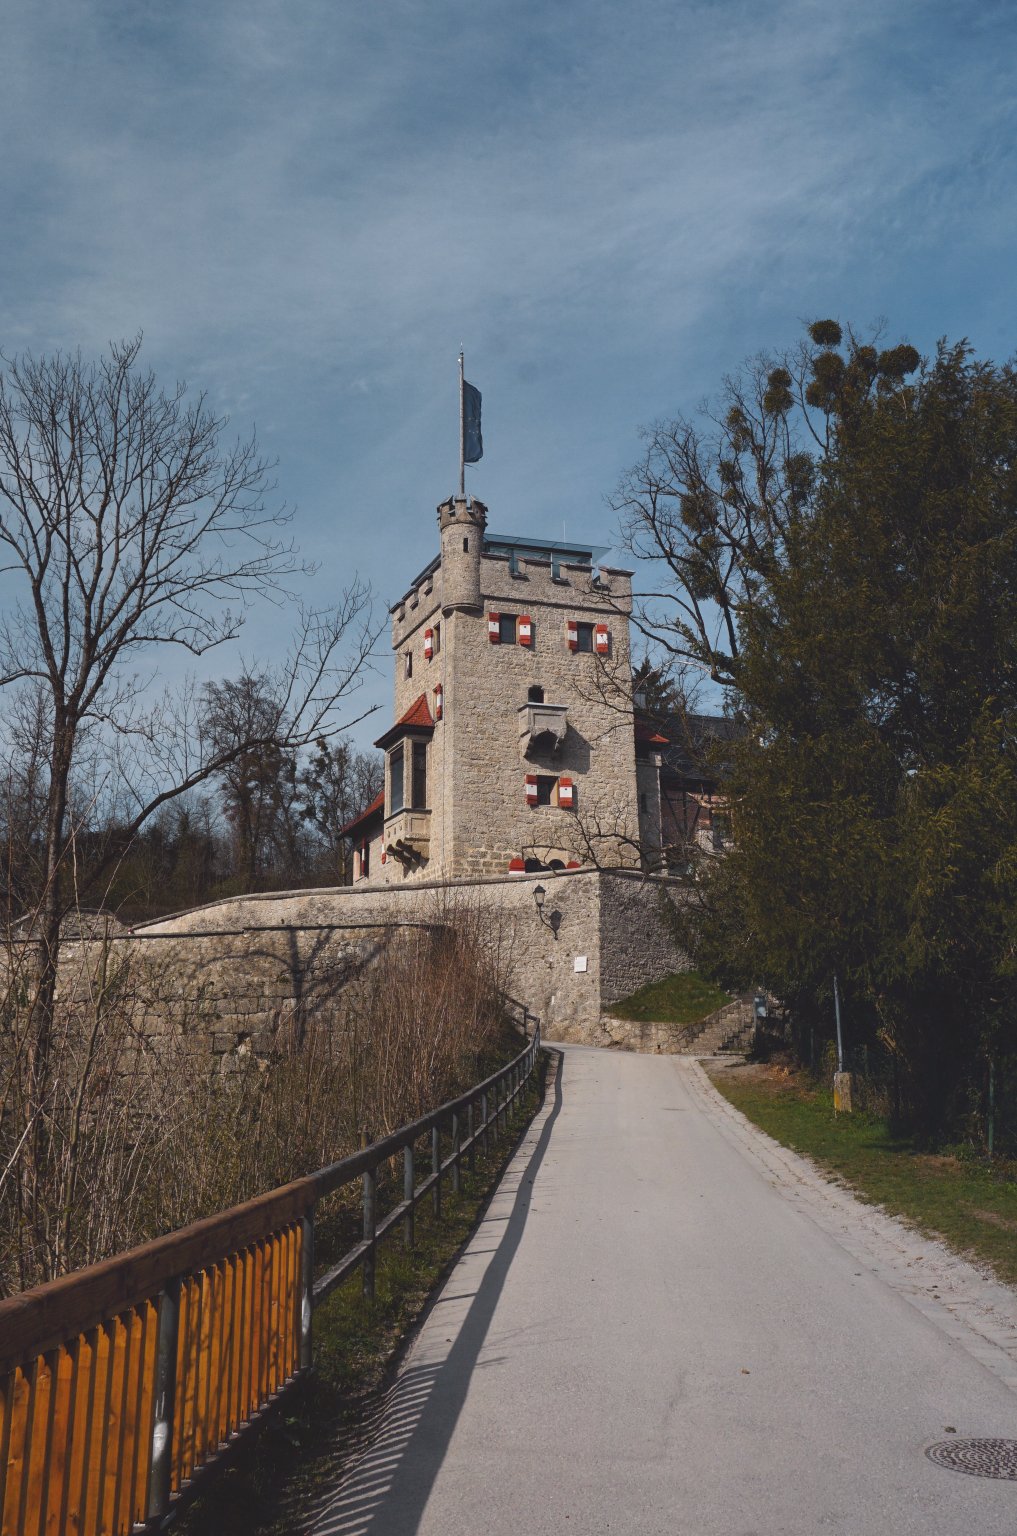 Freyschlössl-Roter Tower, Mönchsberg, Salzburg